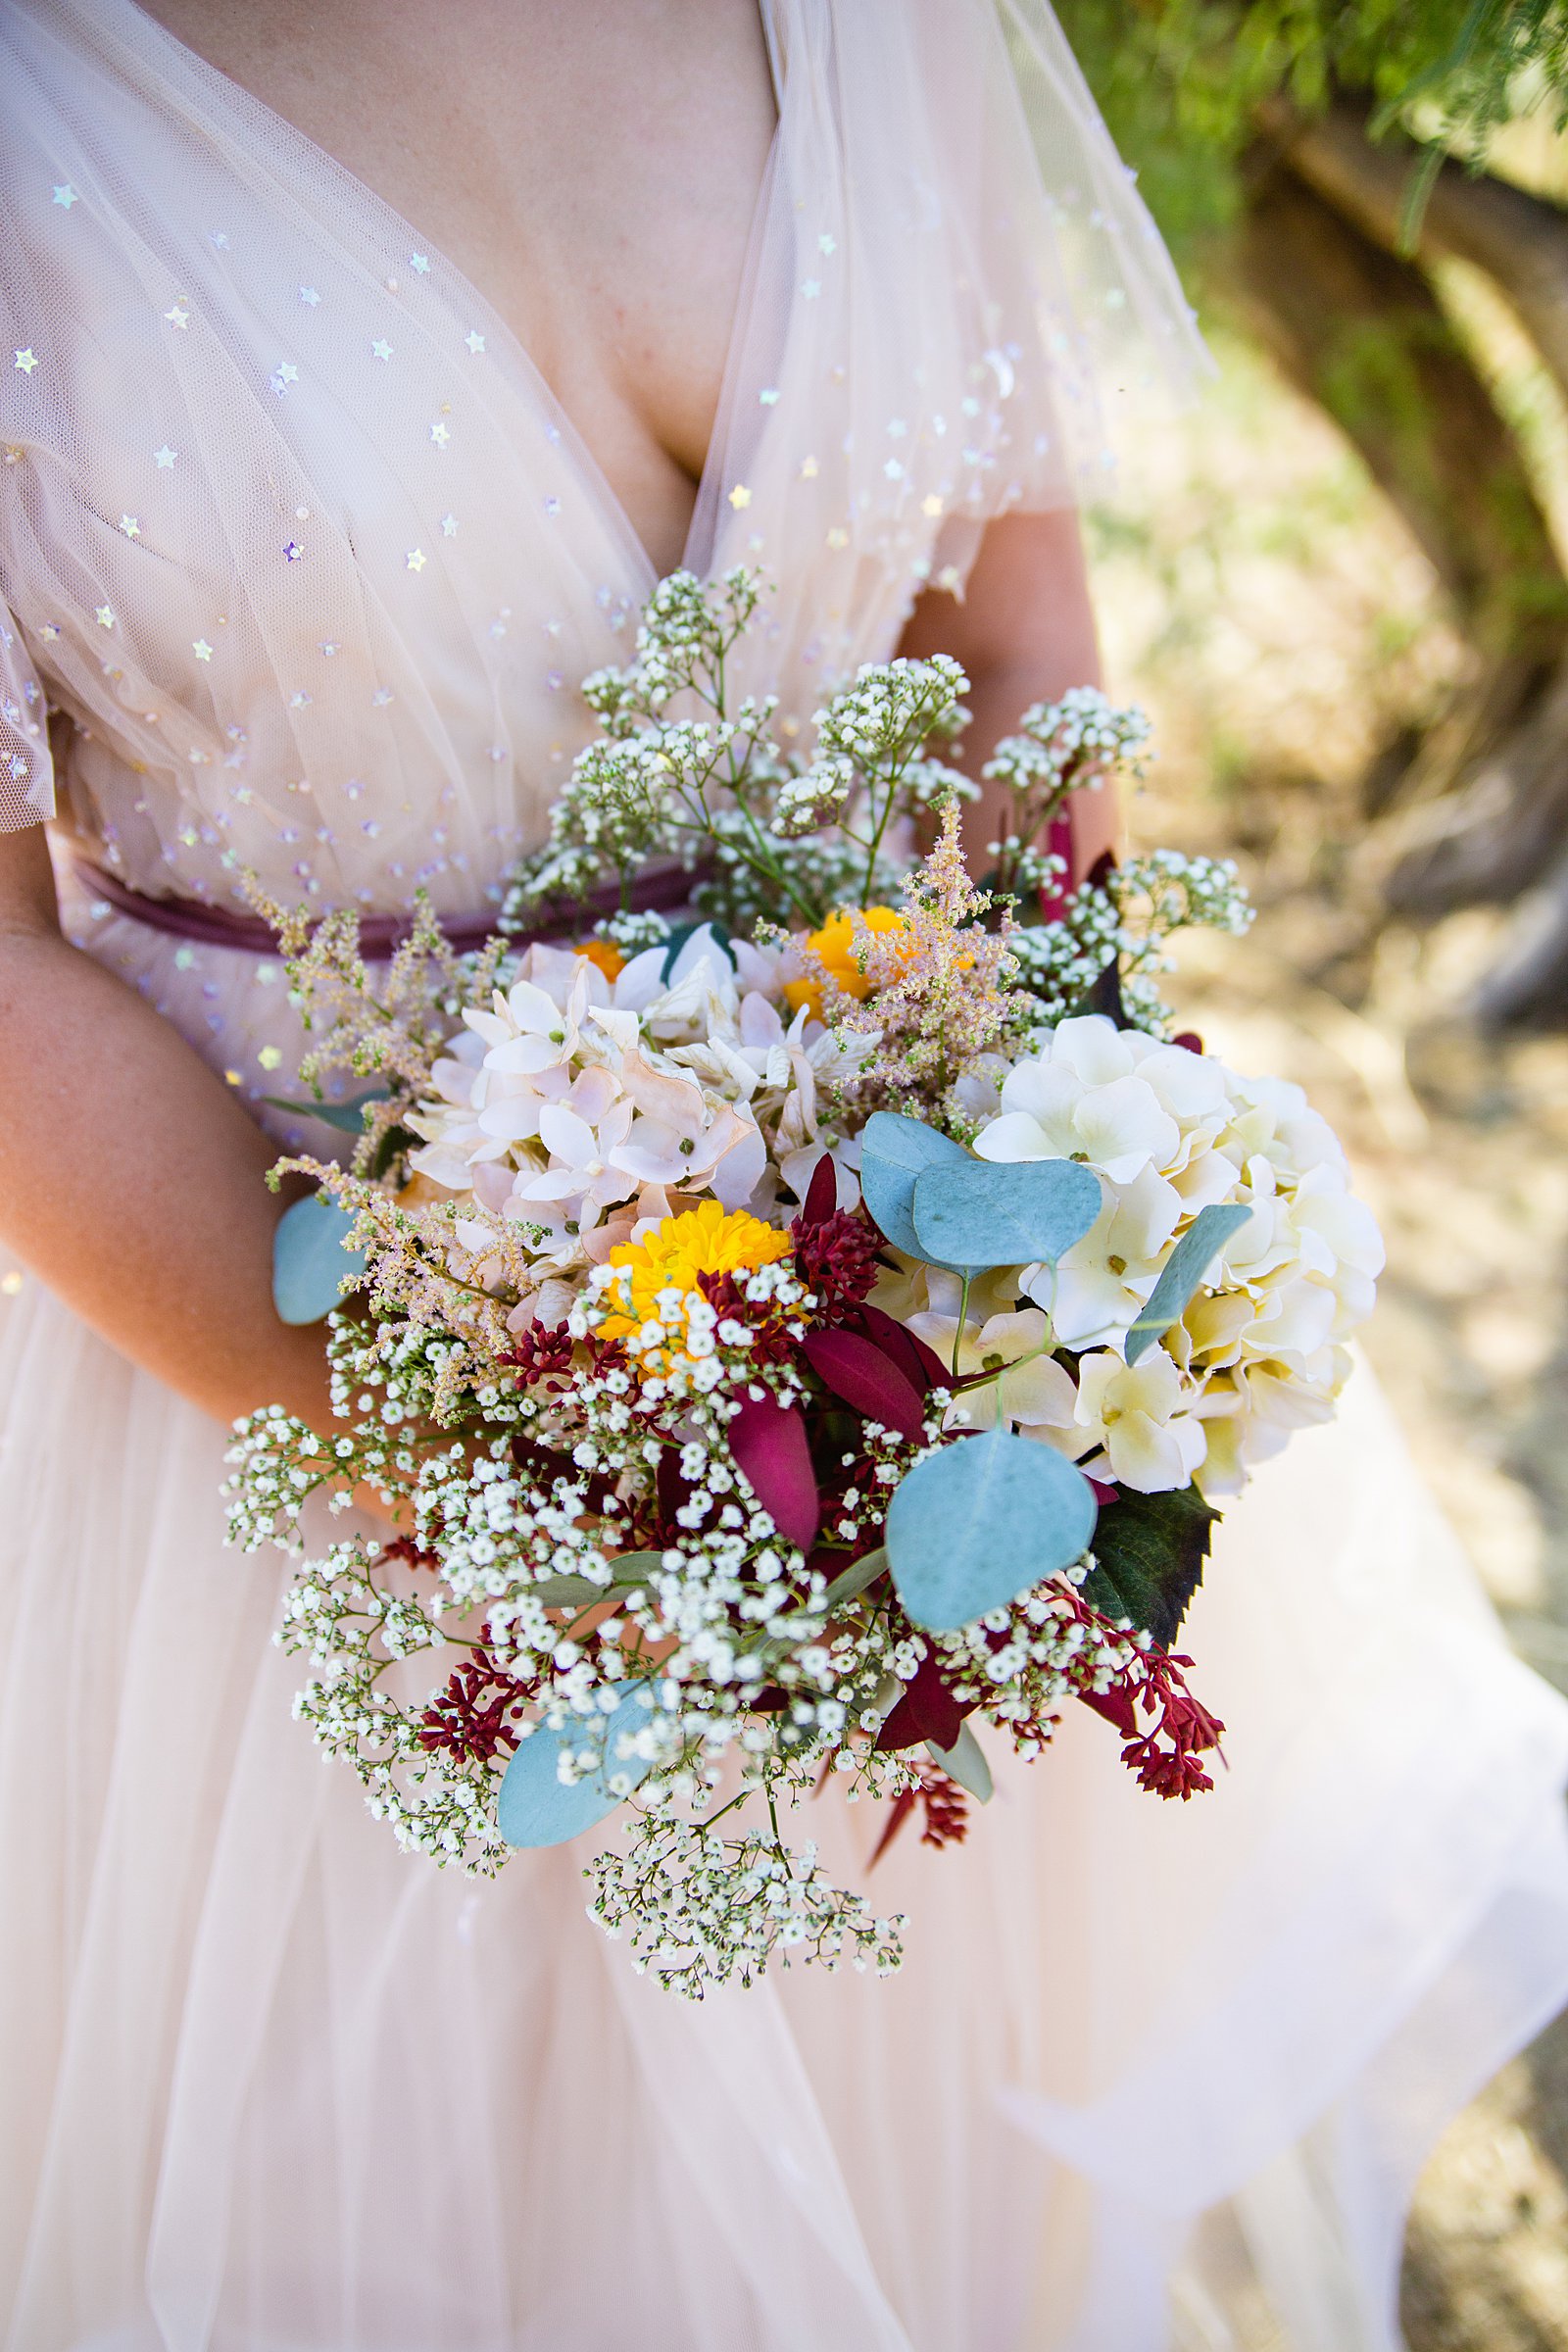 Bride's romantic diy bouquet by PMA Photography.